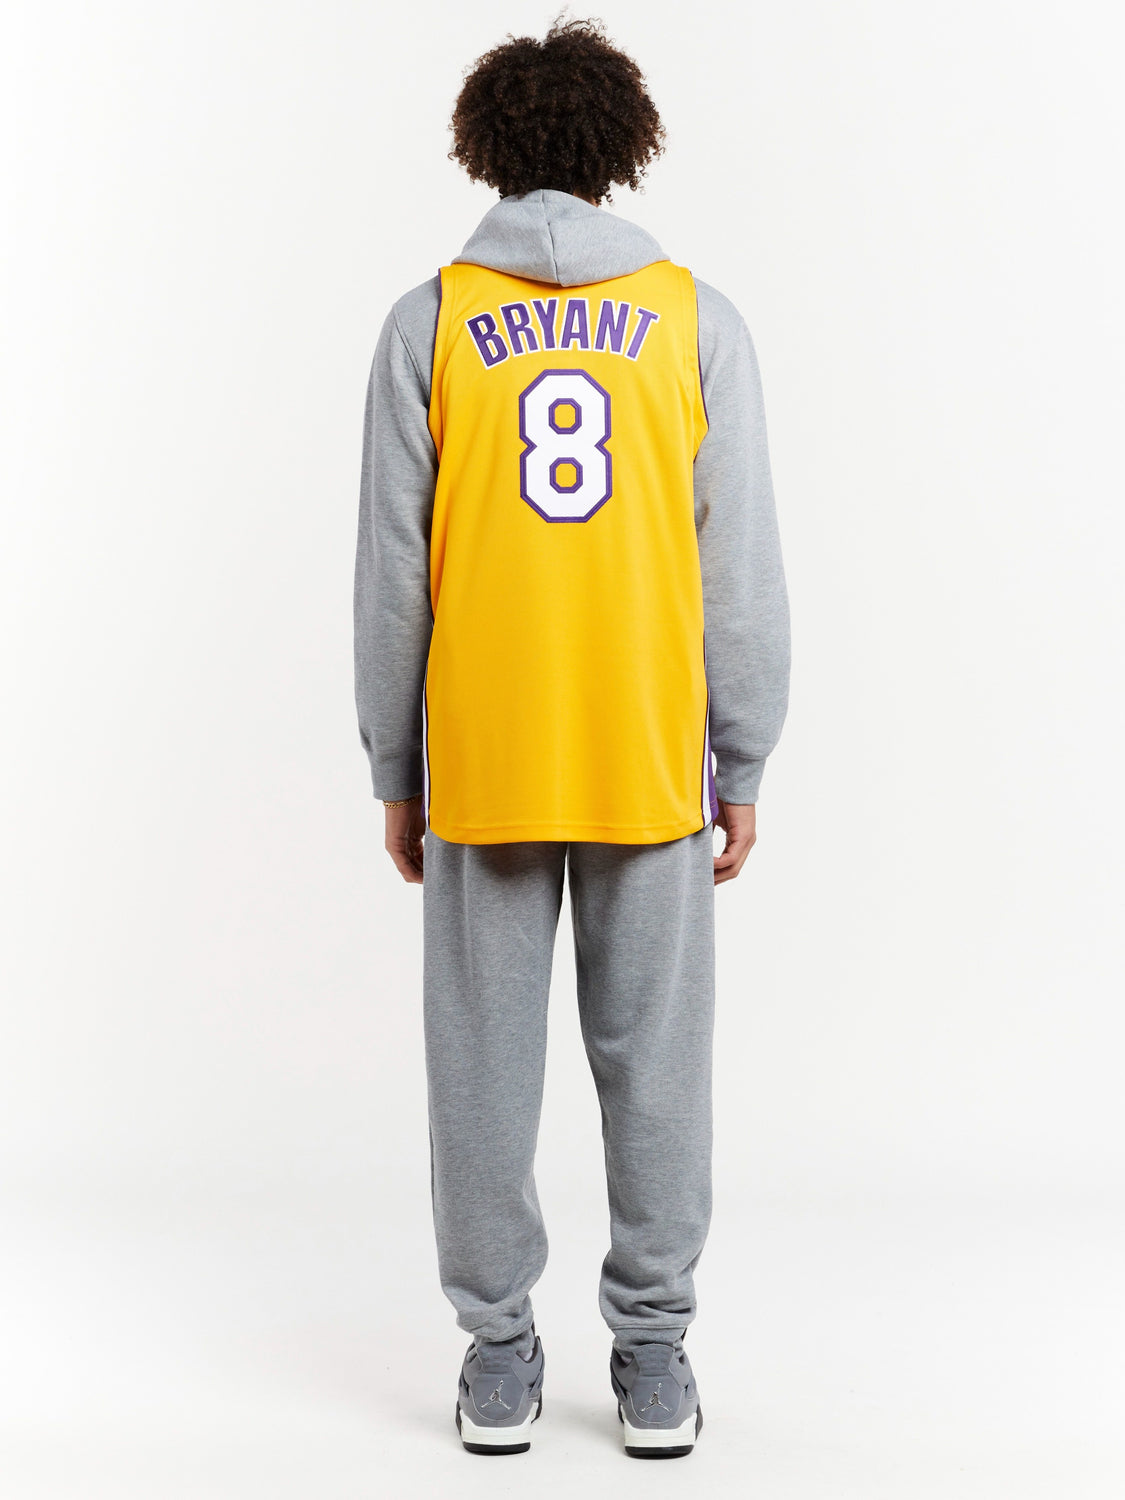 Mitchell & Ness NBA LA Lakers Kobe Bryant 8 Authentic Jersey White